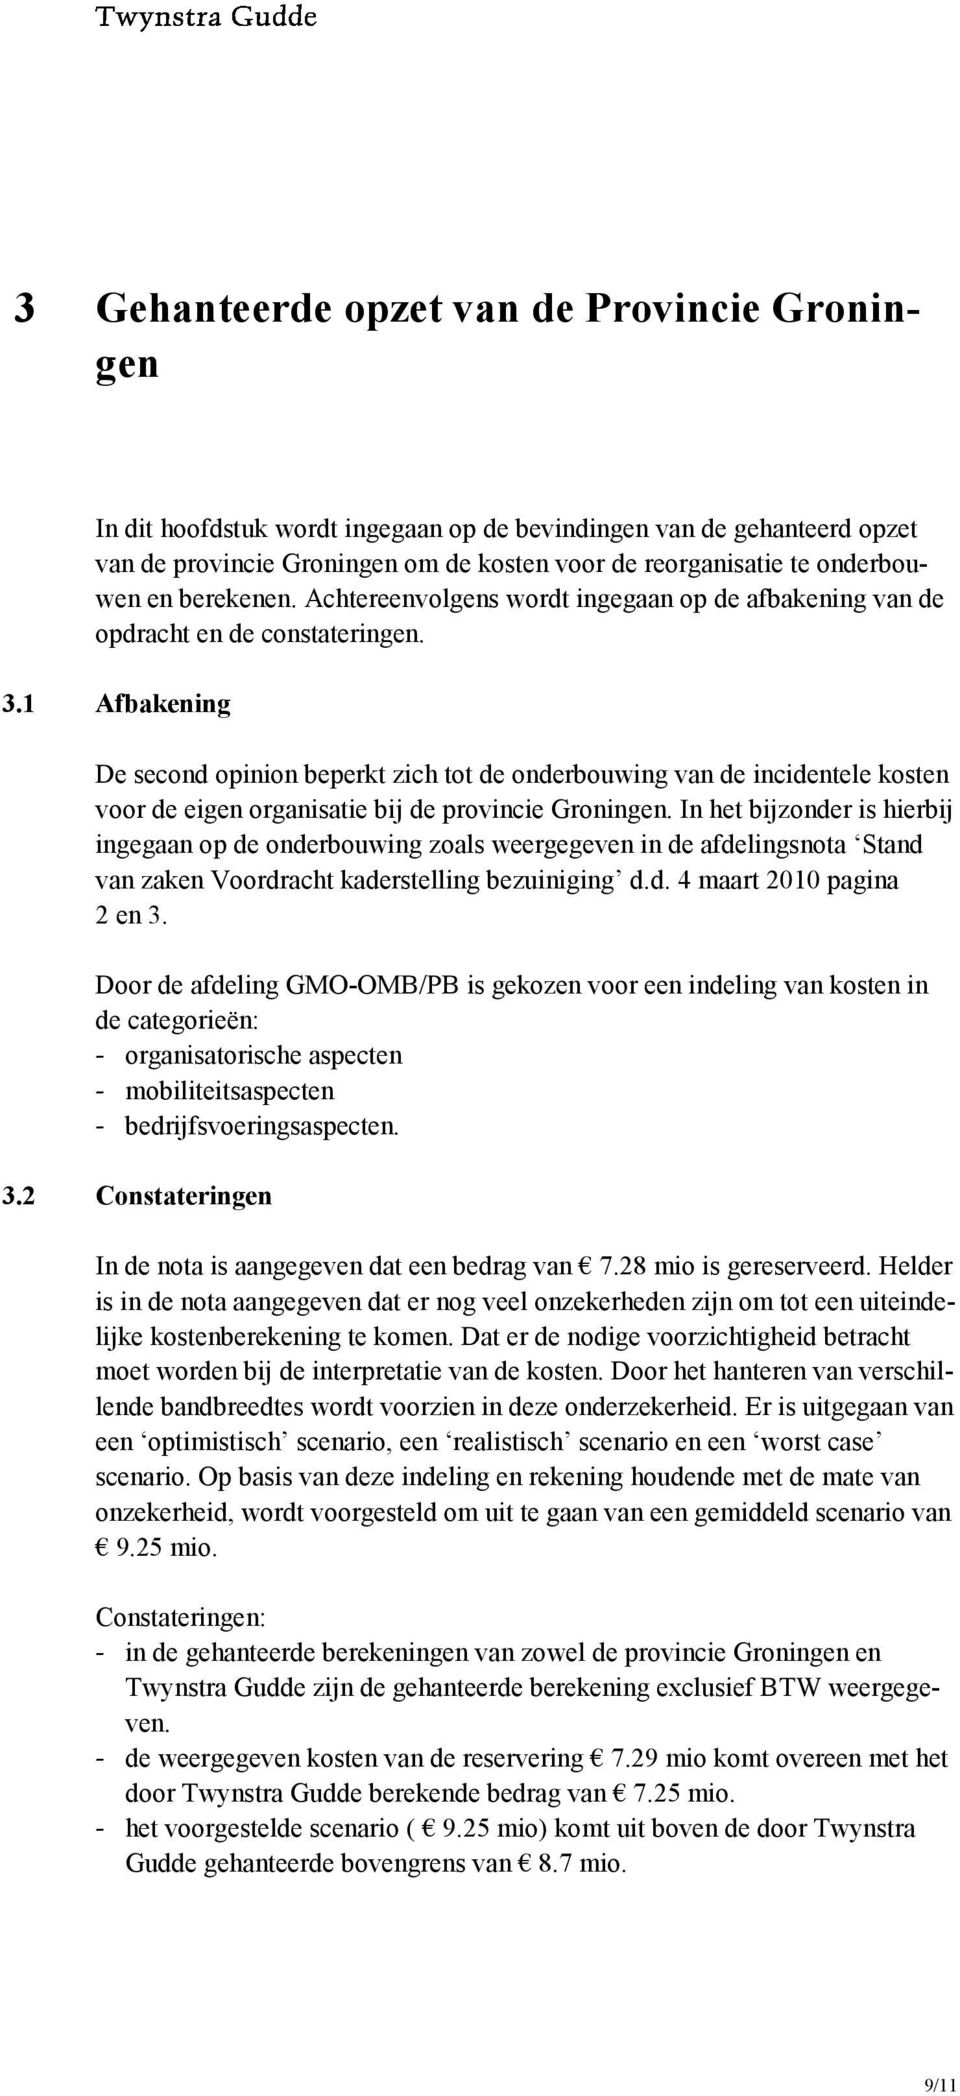 1 Afbakening De second opinion beperkt zich tot de onderbouwing van de incidentele kosten voor de eigen organisatie bij de provincie Groningen.